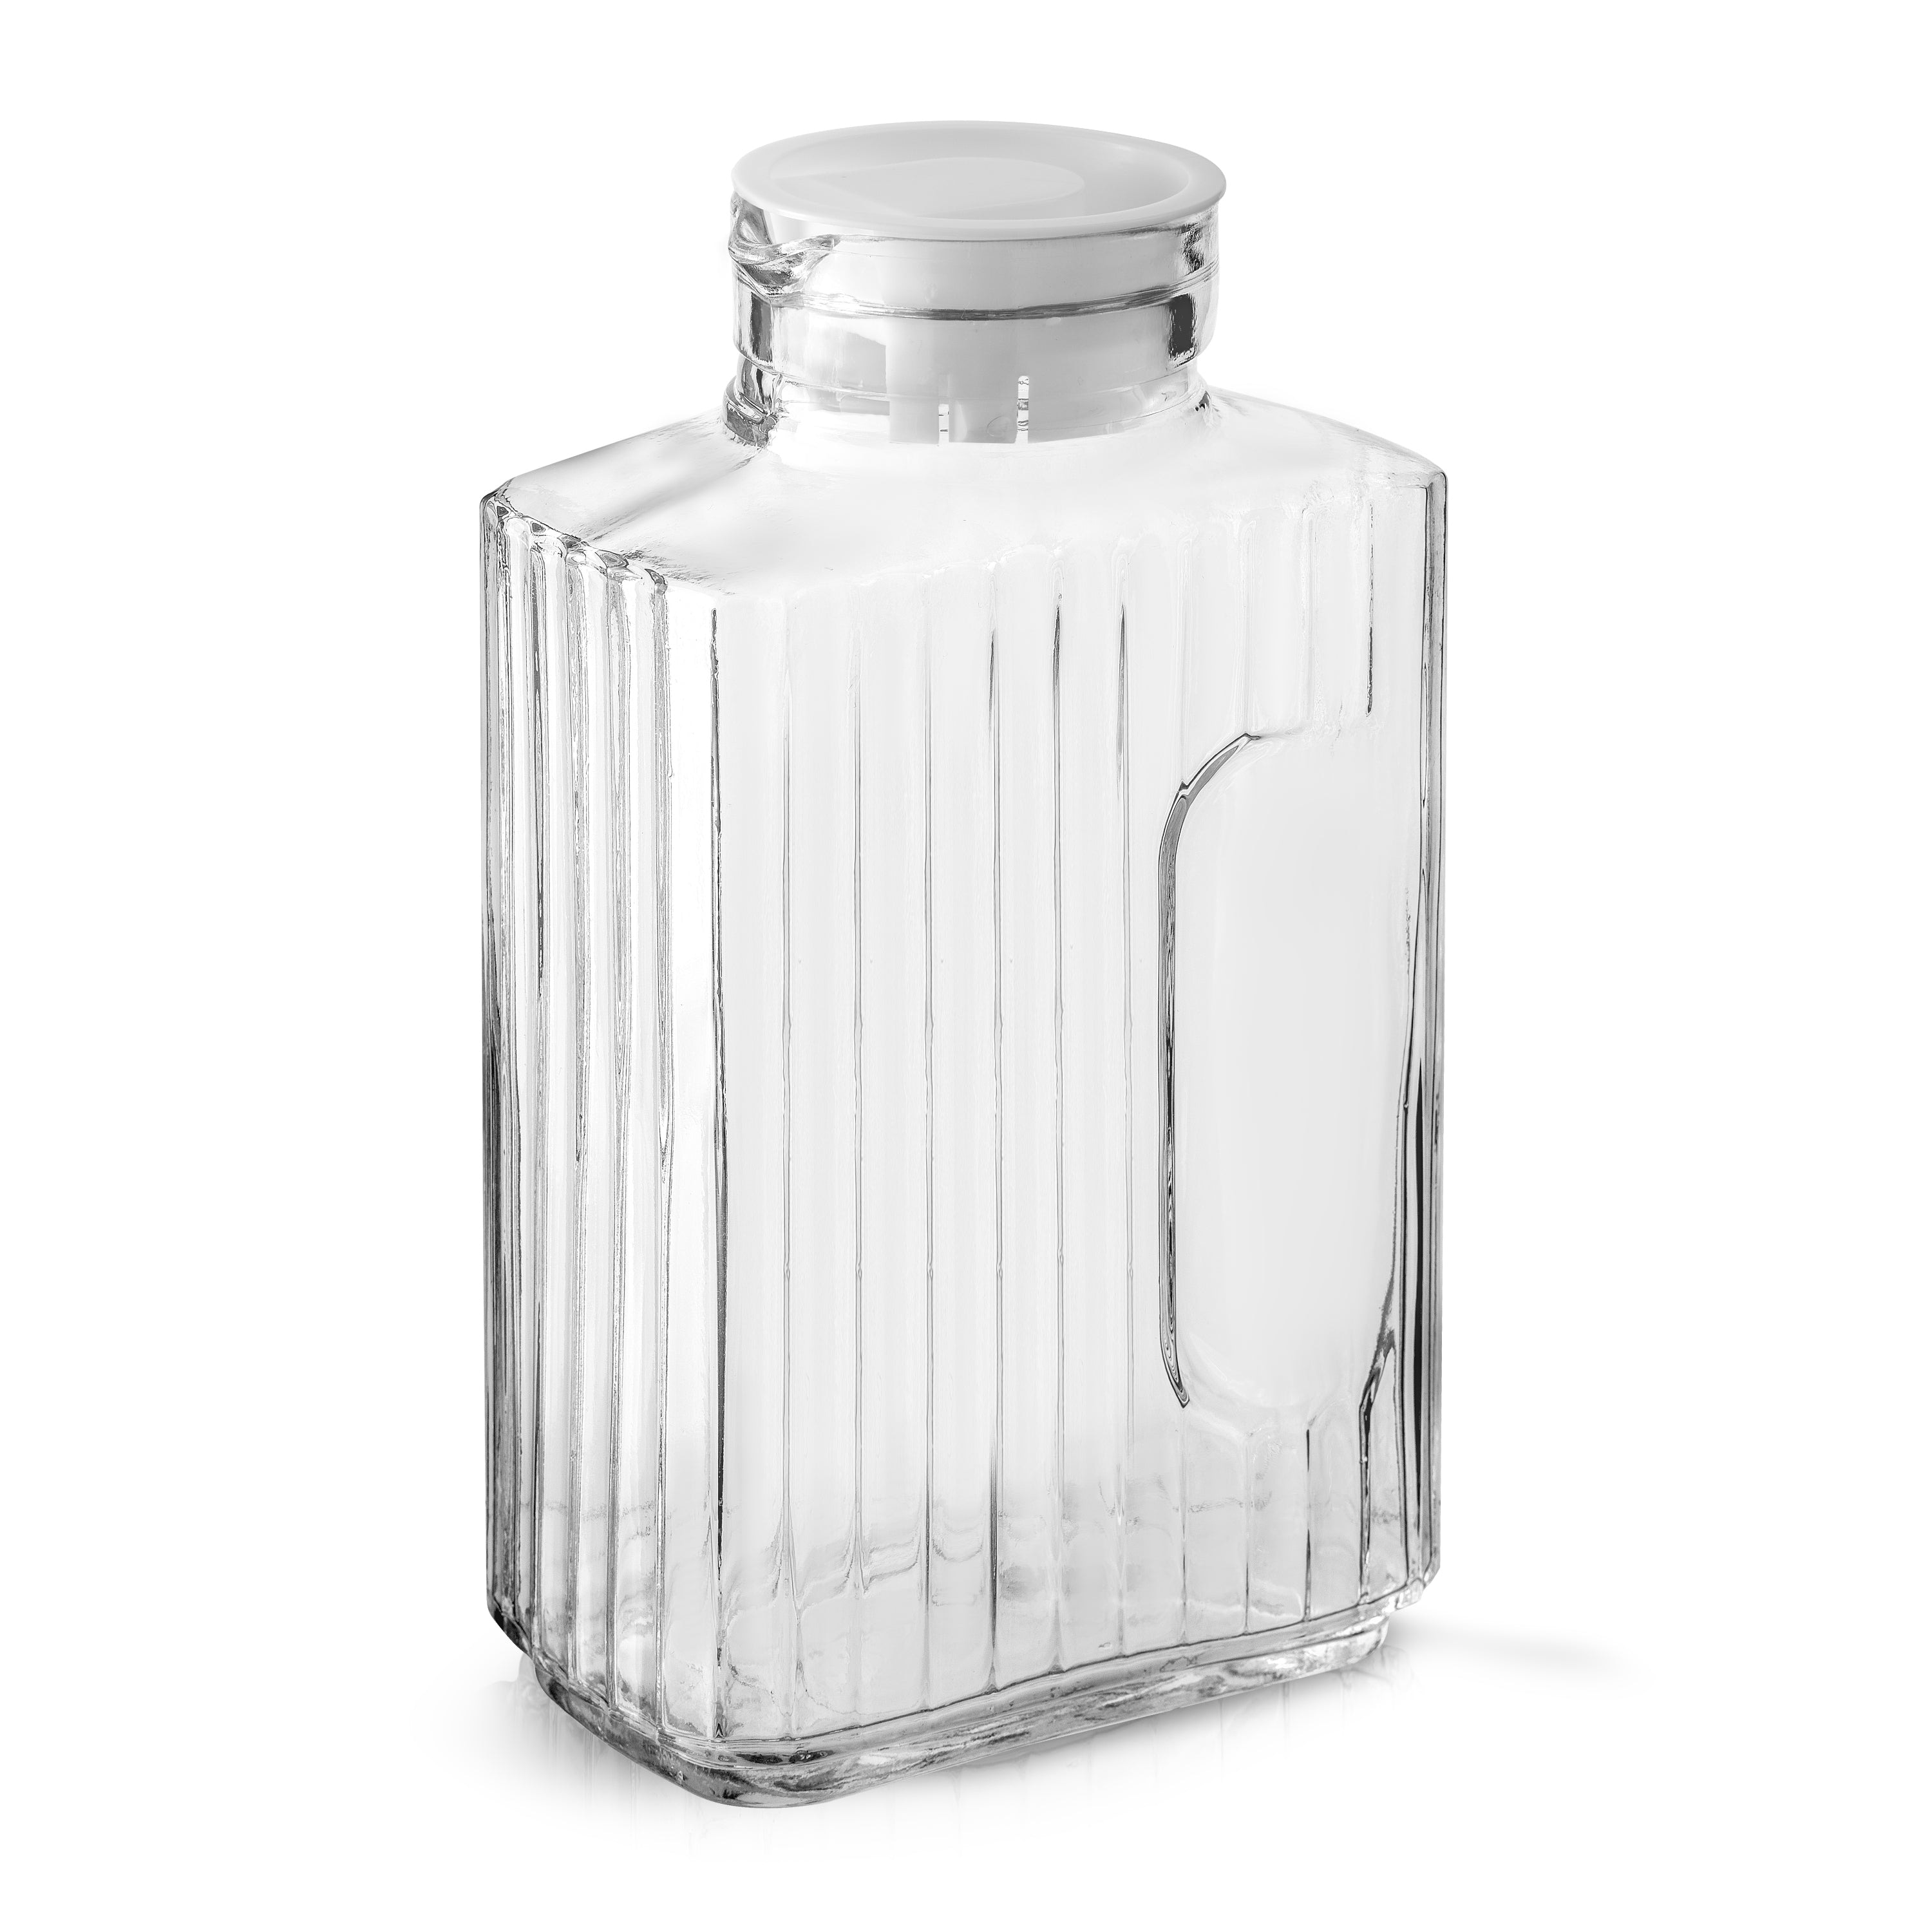 Hali Glass Carafe Bottle Pitcher with 6 Lids - 35 oz